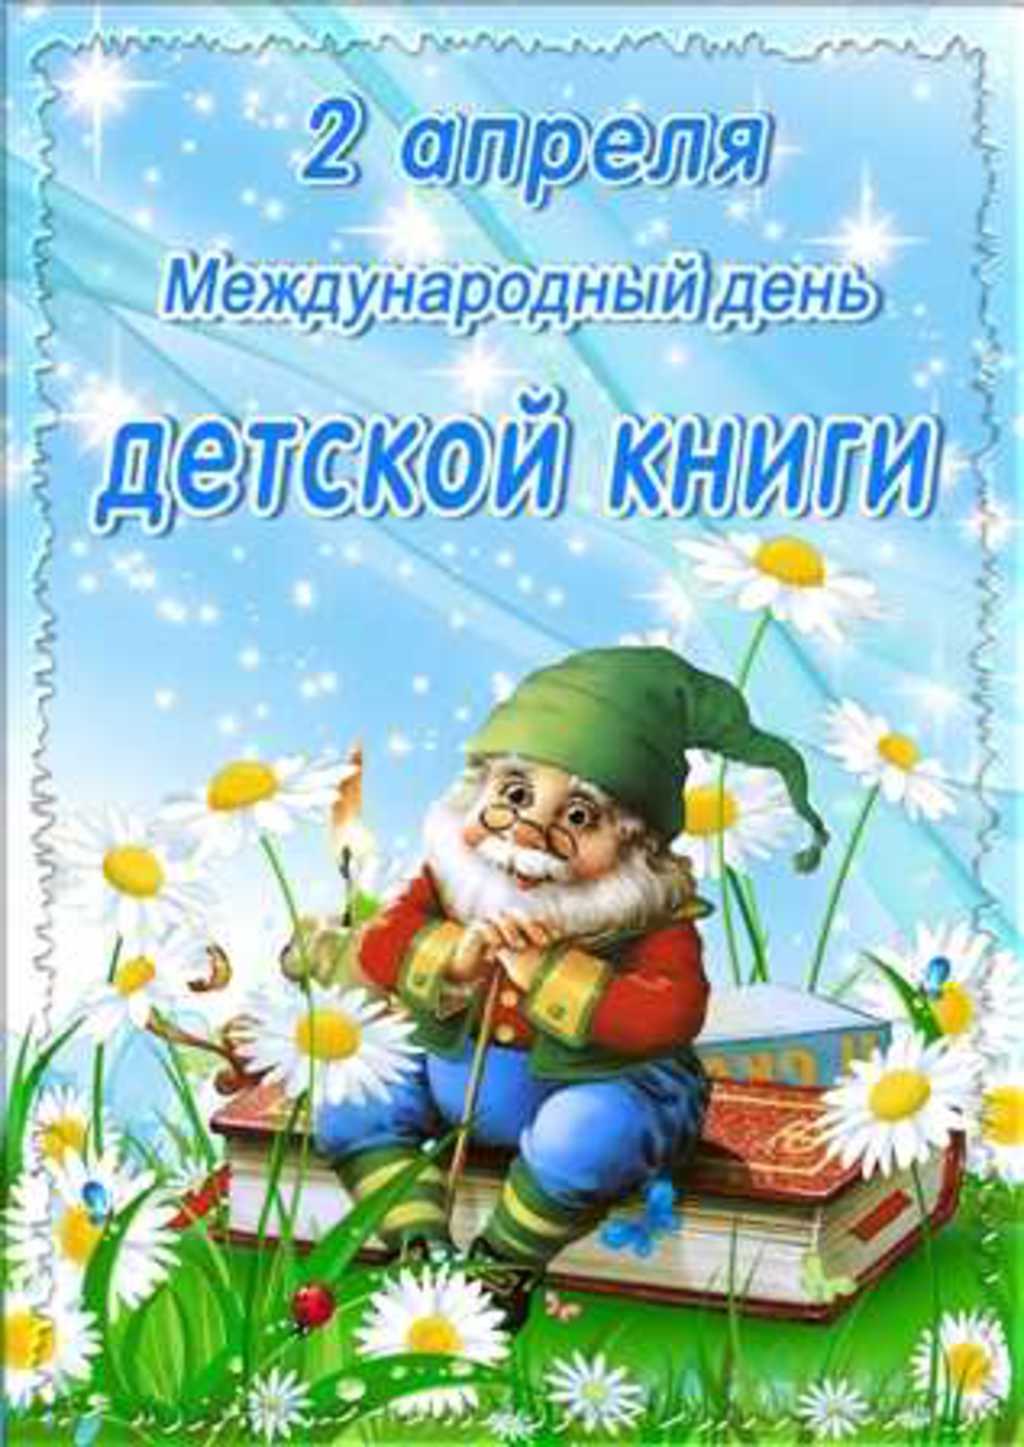 Новые Календарь праздников всемирный день детской книги однокласснице